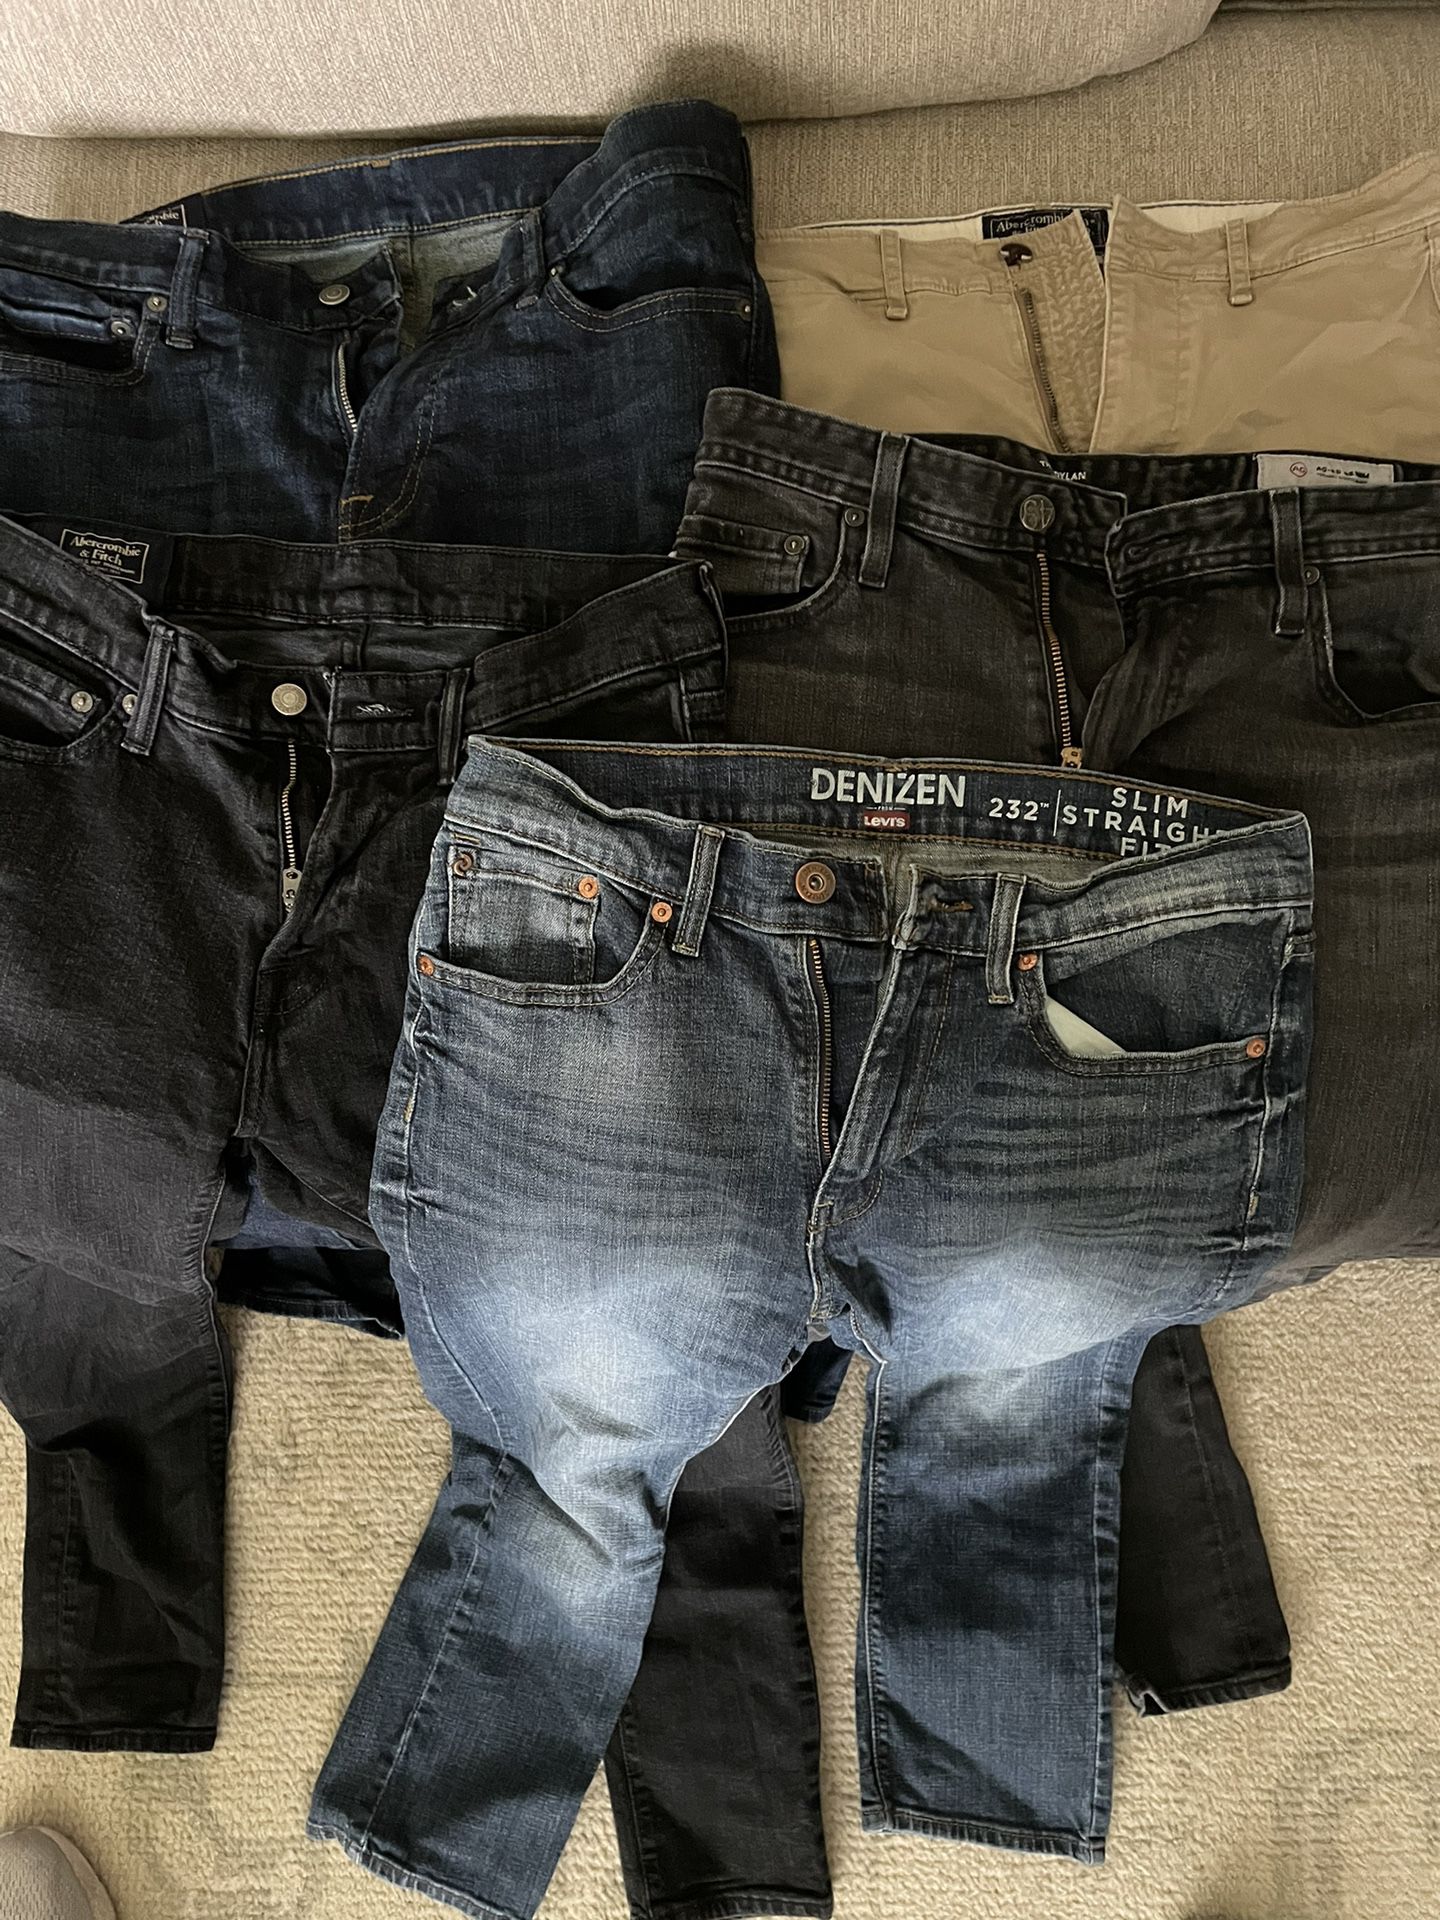 controller Dem Søg Mens 31/32 Jeans & Pants for Sale in West Linn, OR - OfferUp